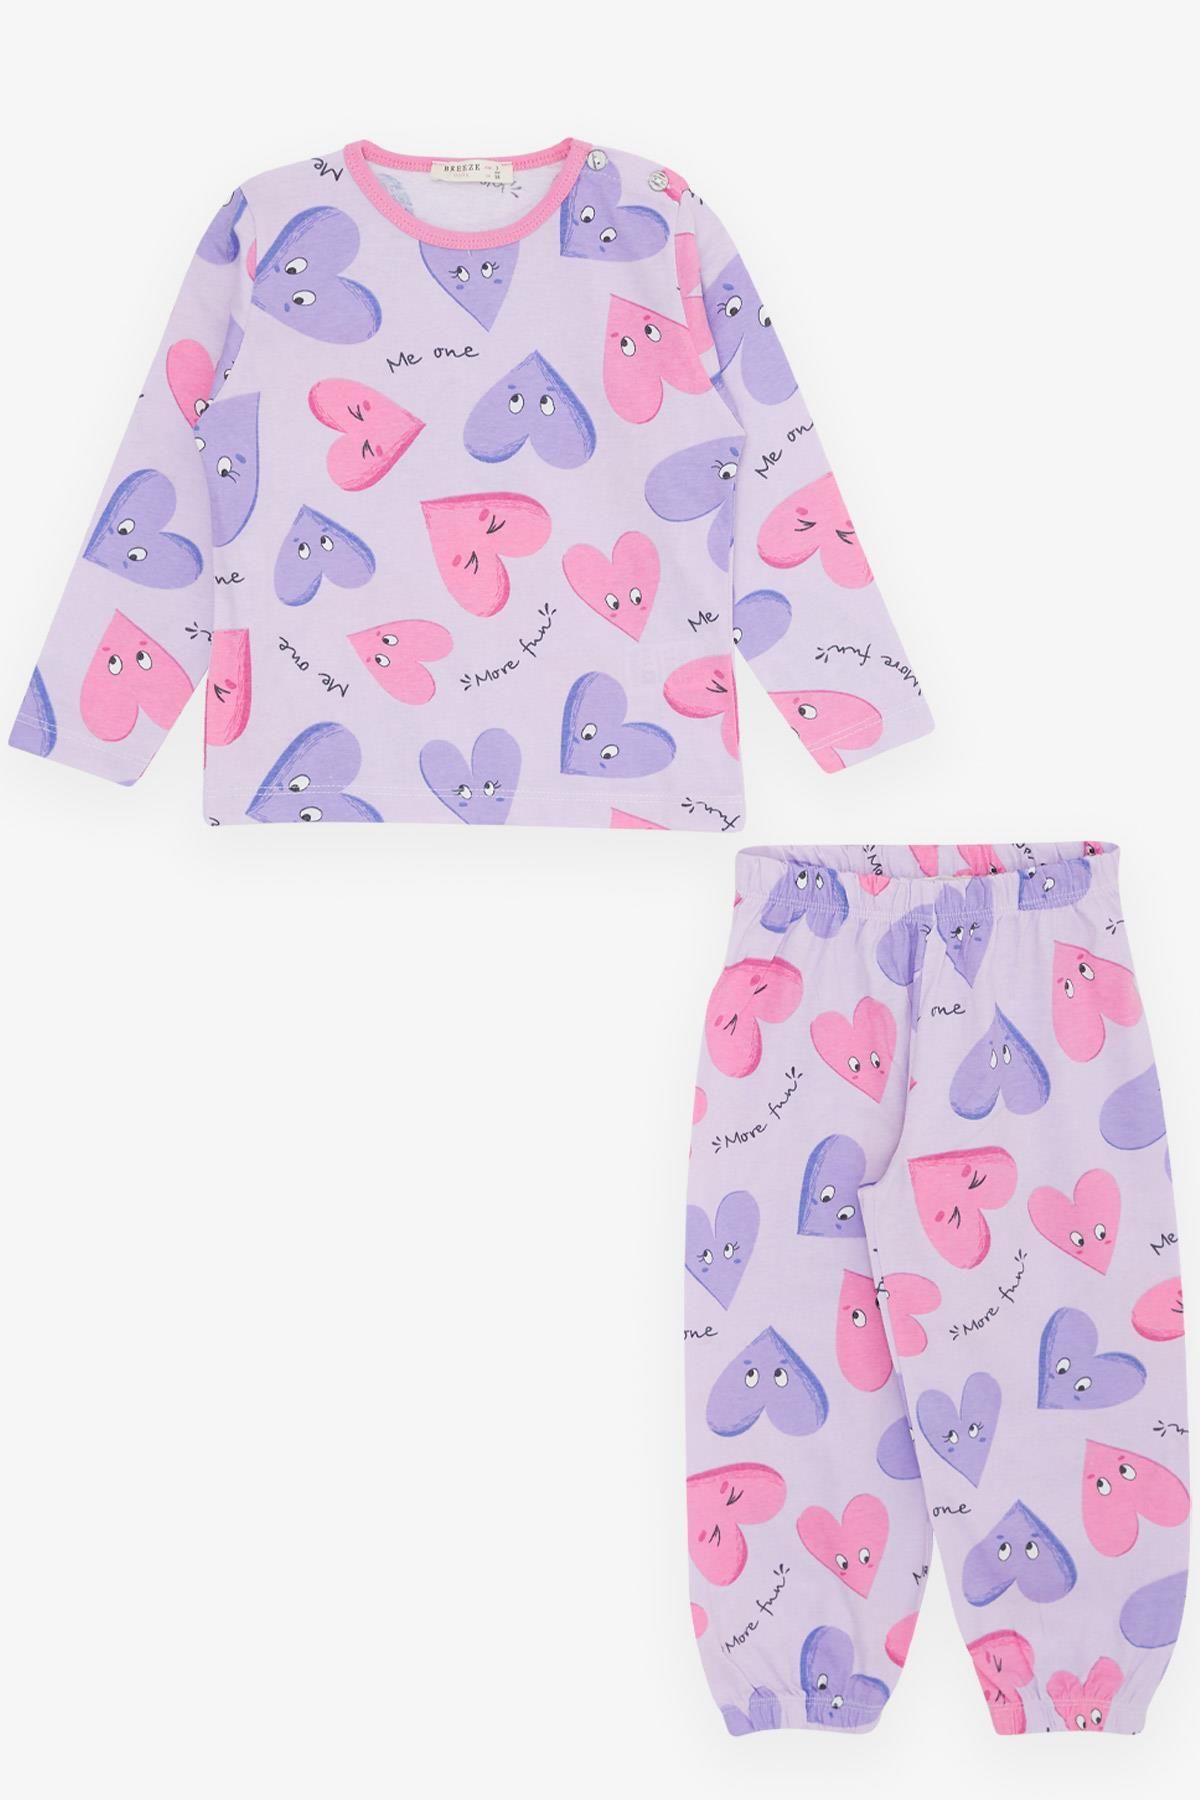 Breeze Kız Bebek Pijama Takımı Sevimli Kalp Desenli 9 Ay-3 Yaş, Açık Lila